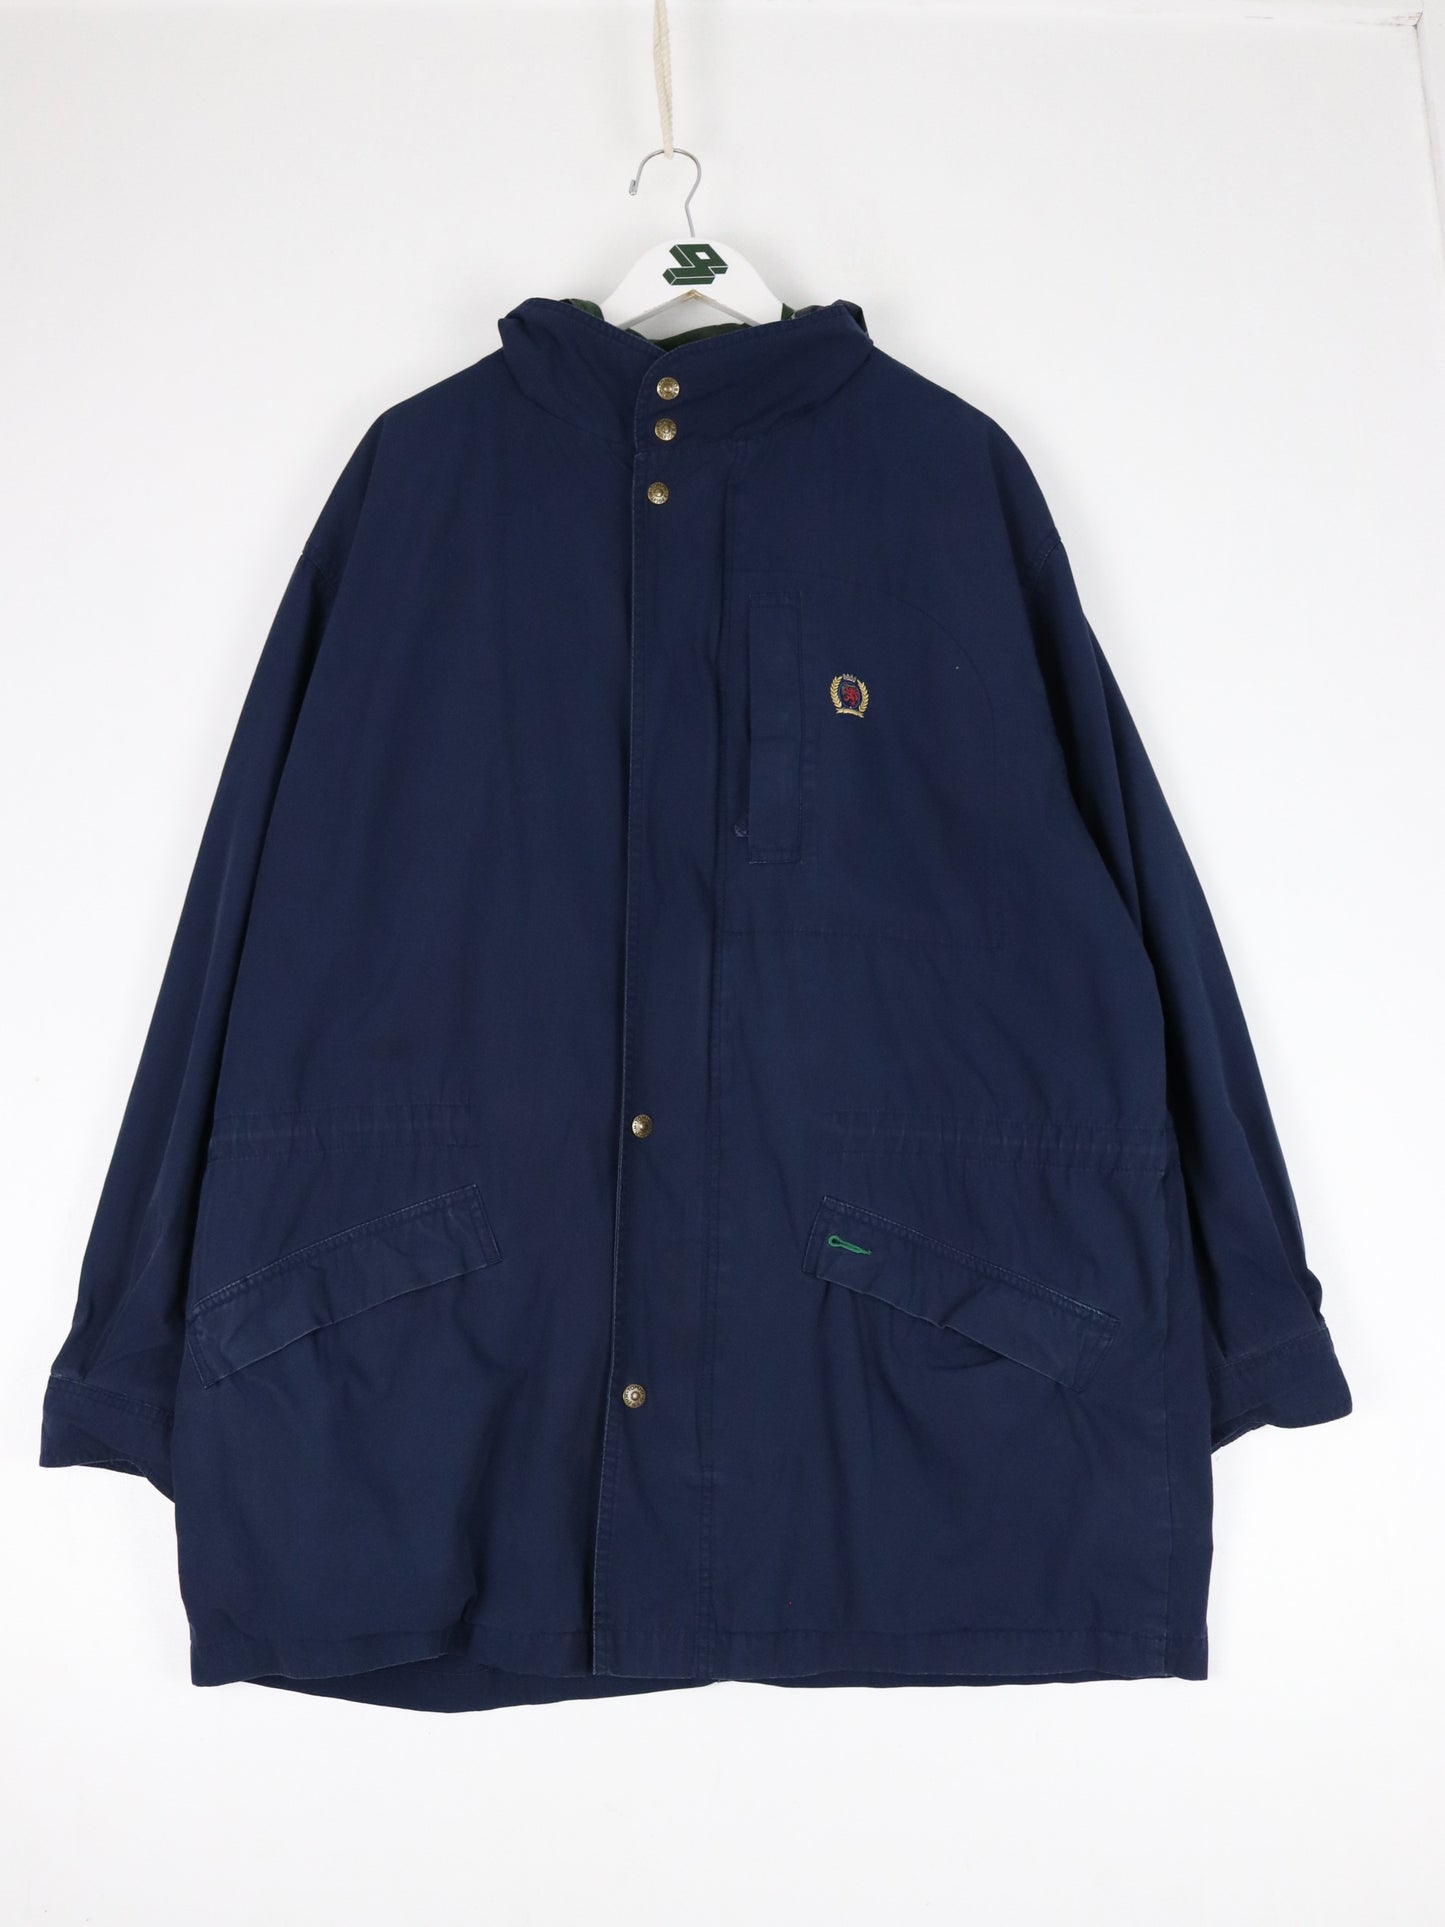 Vintage Tommy Hilfiger Jacket Mens Large Blue Parka Coat 90s